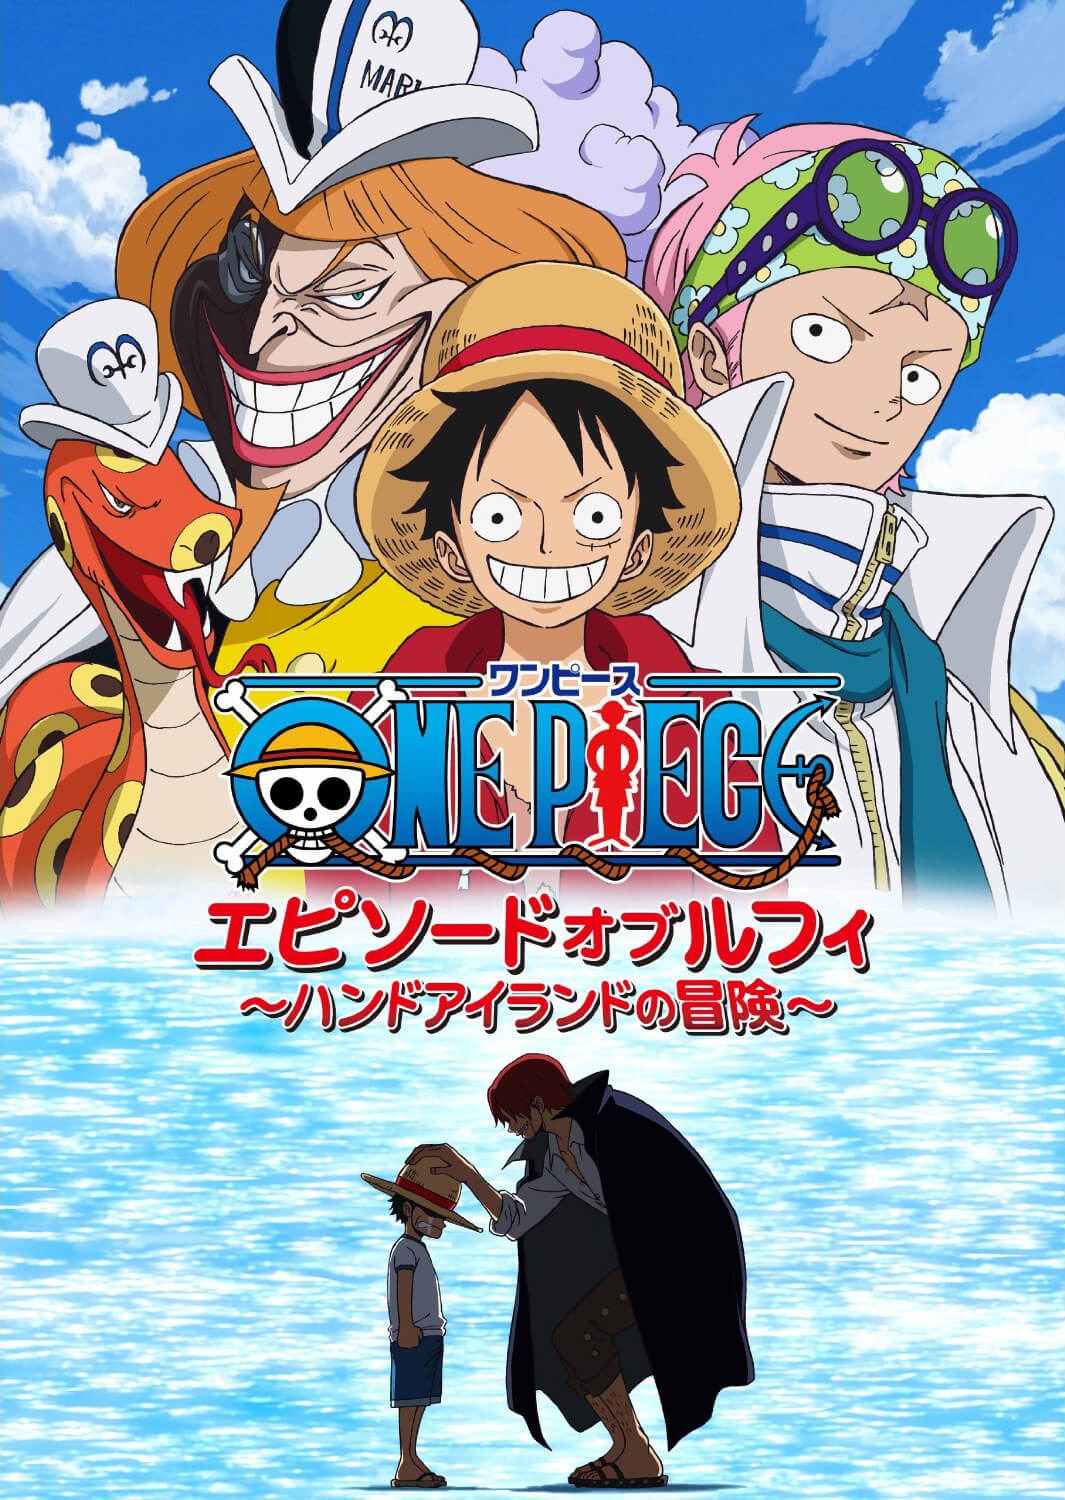 رسوم متحركة لمحبي One Piece